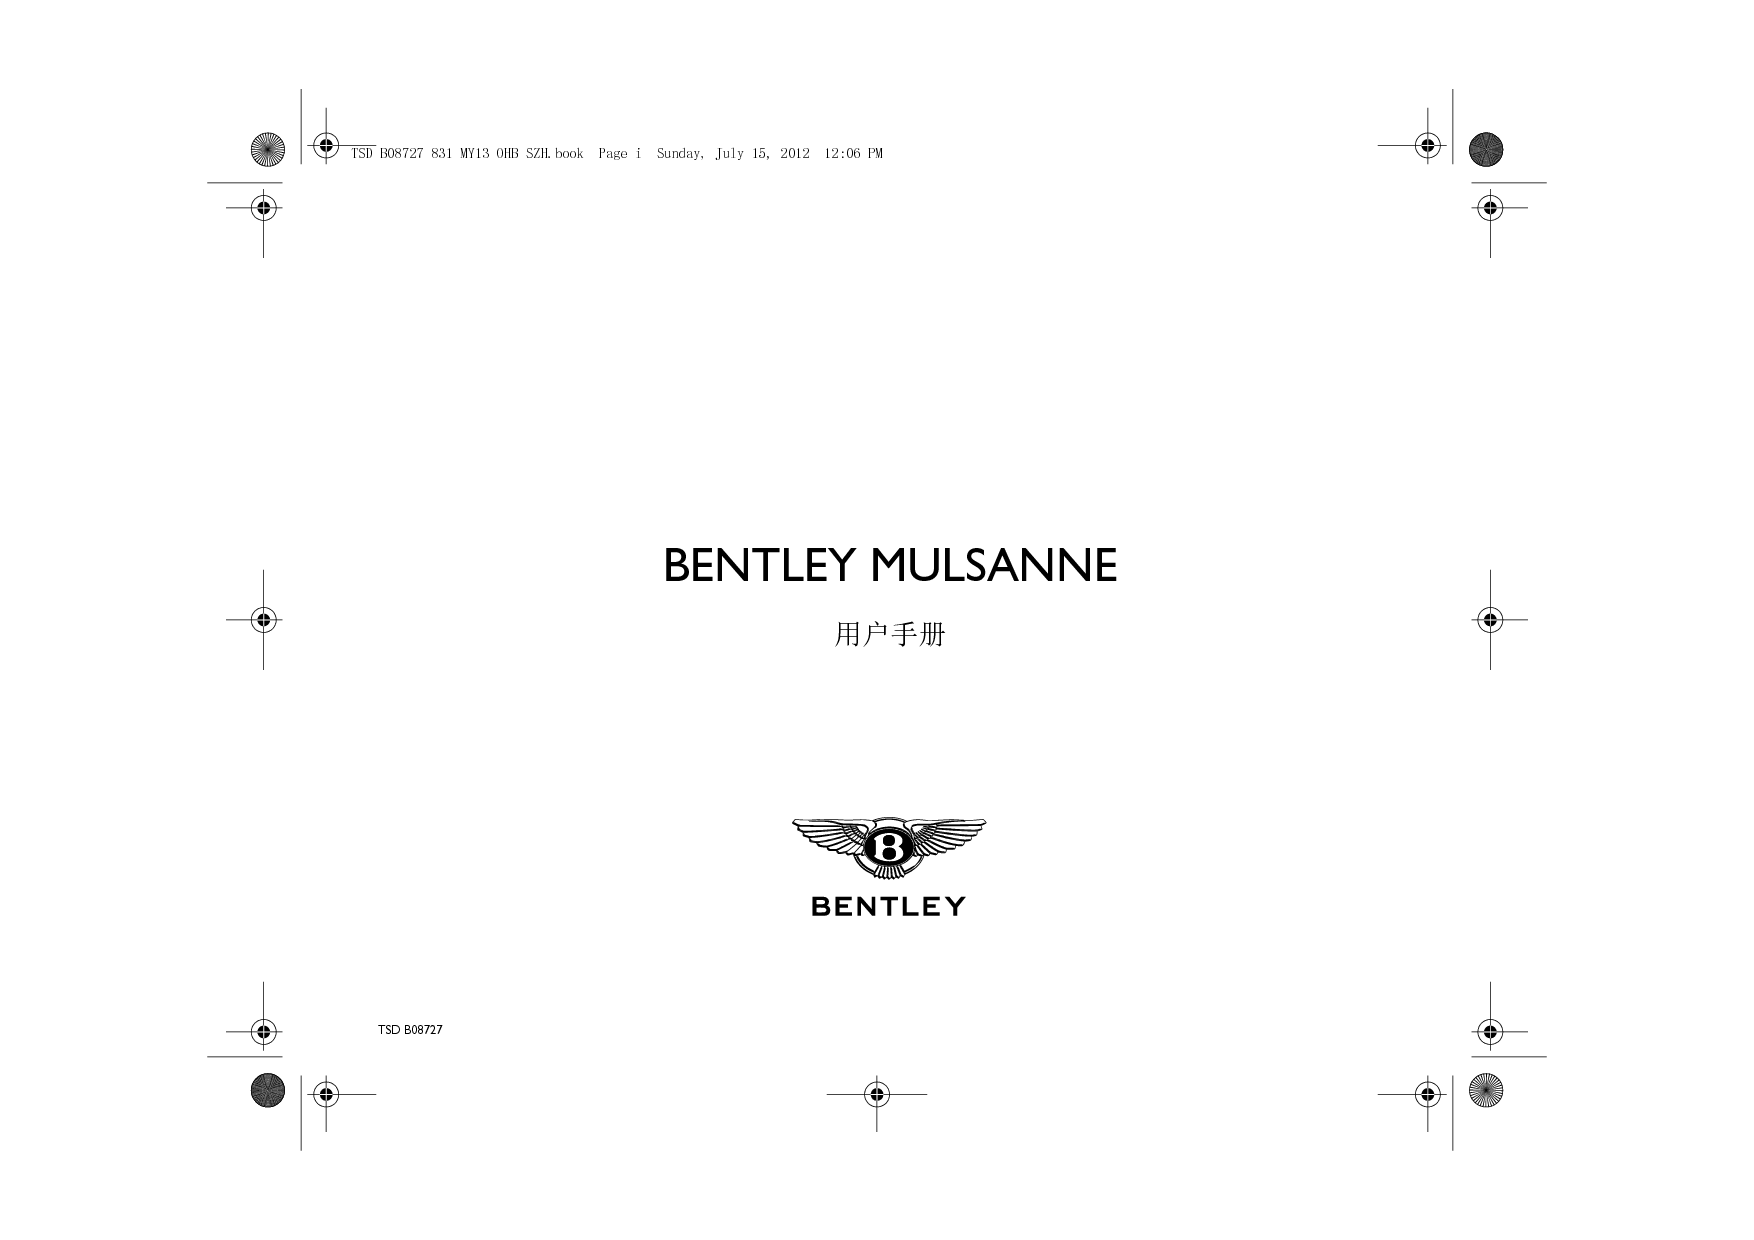 宾利 Bentley Mulsanne 2013 用户手册 封面